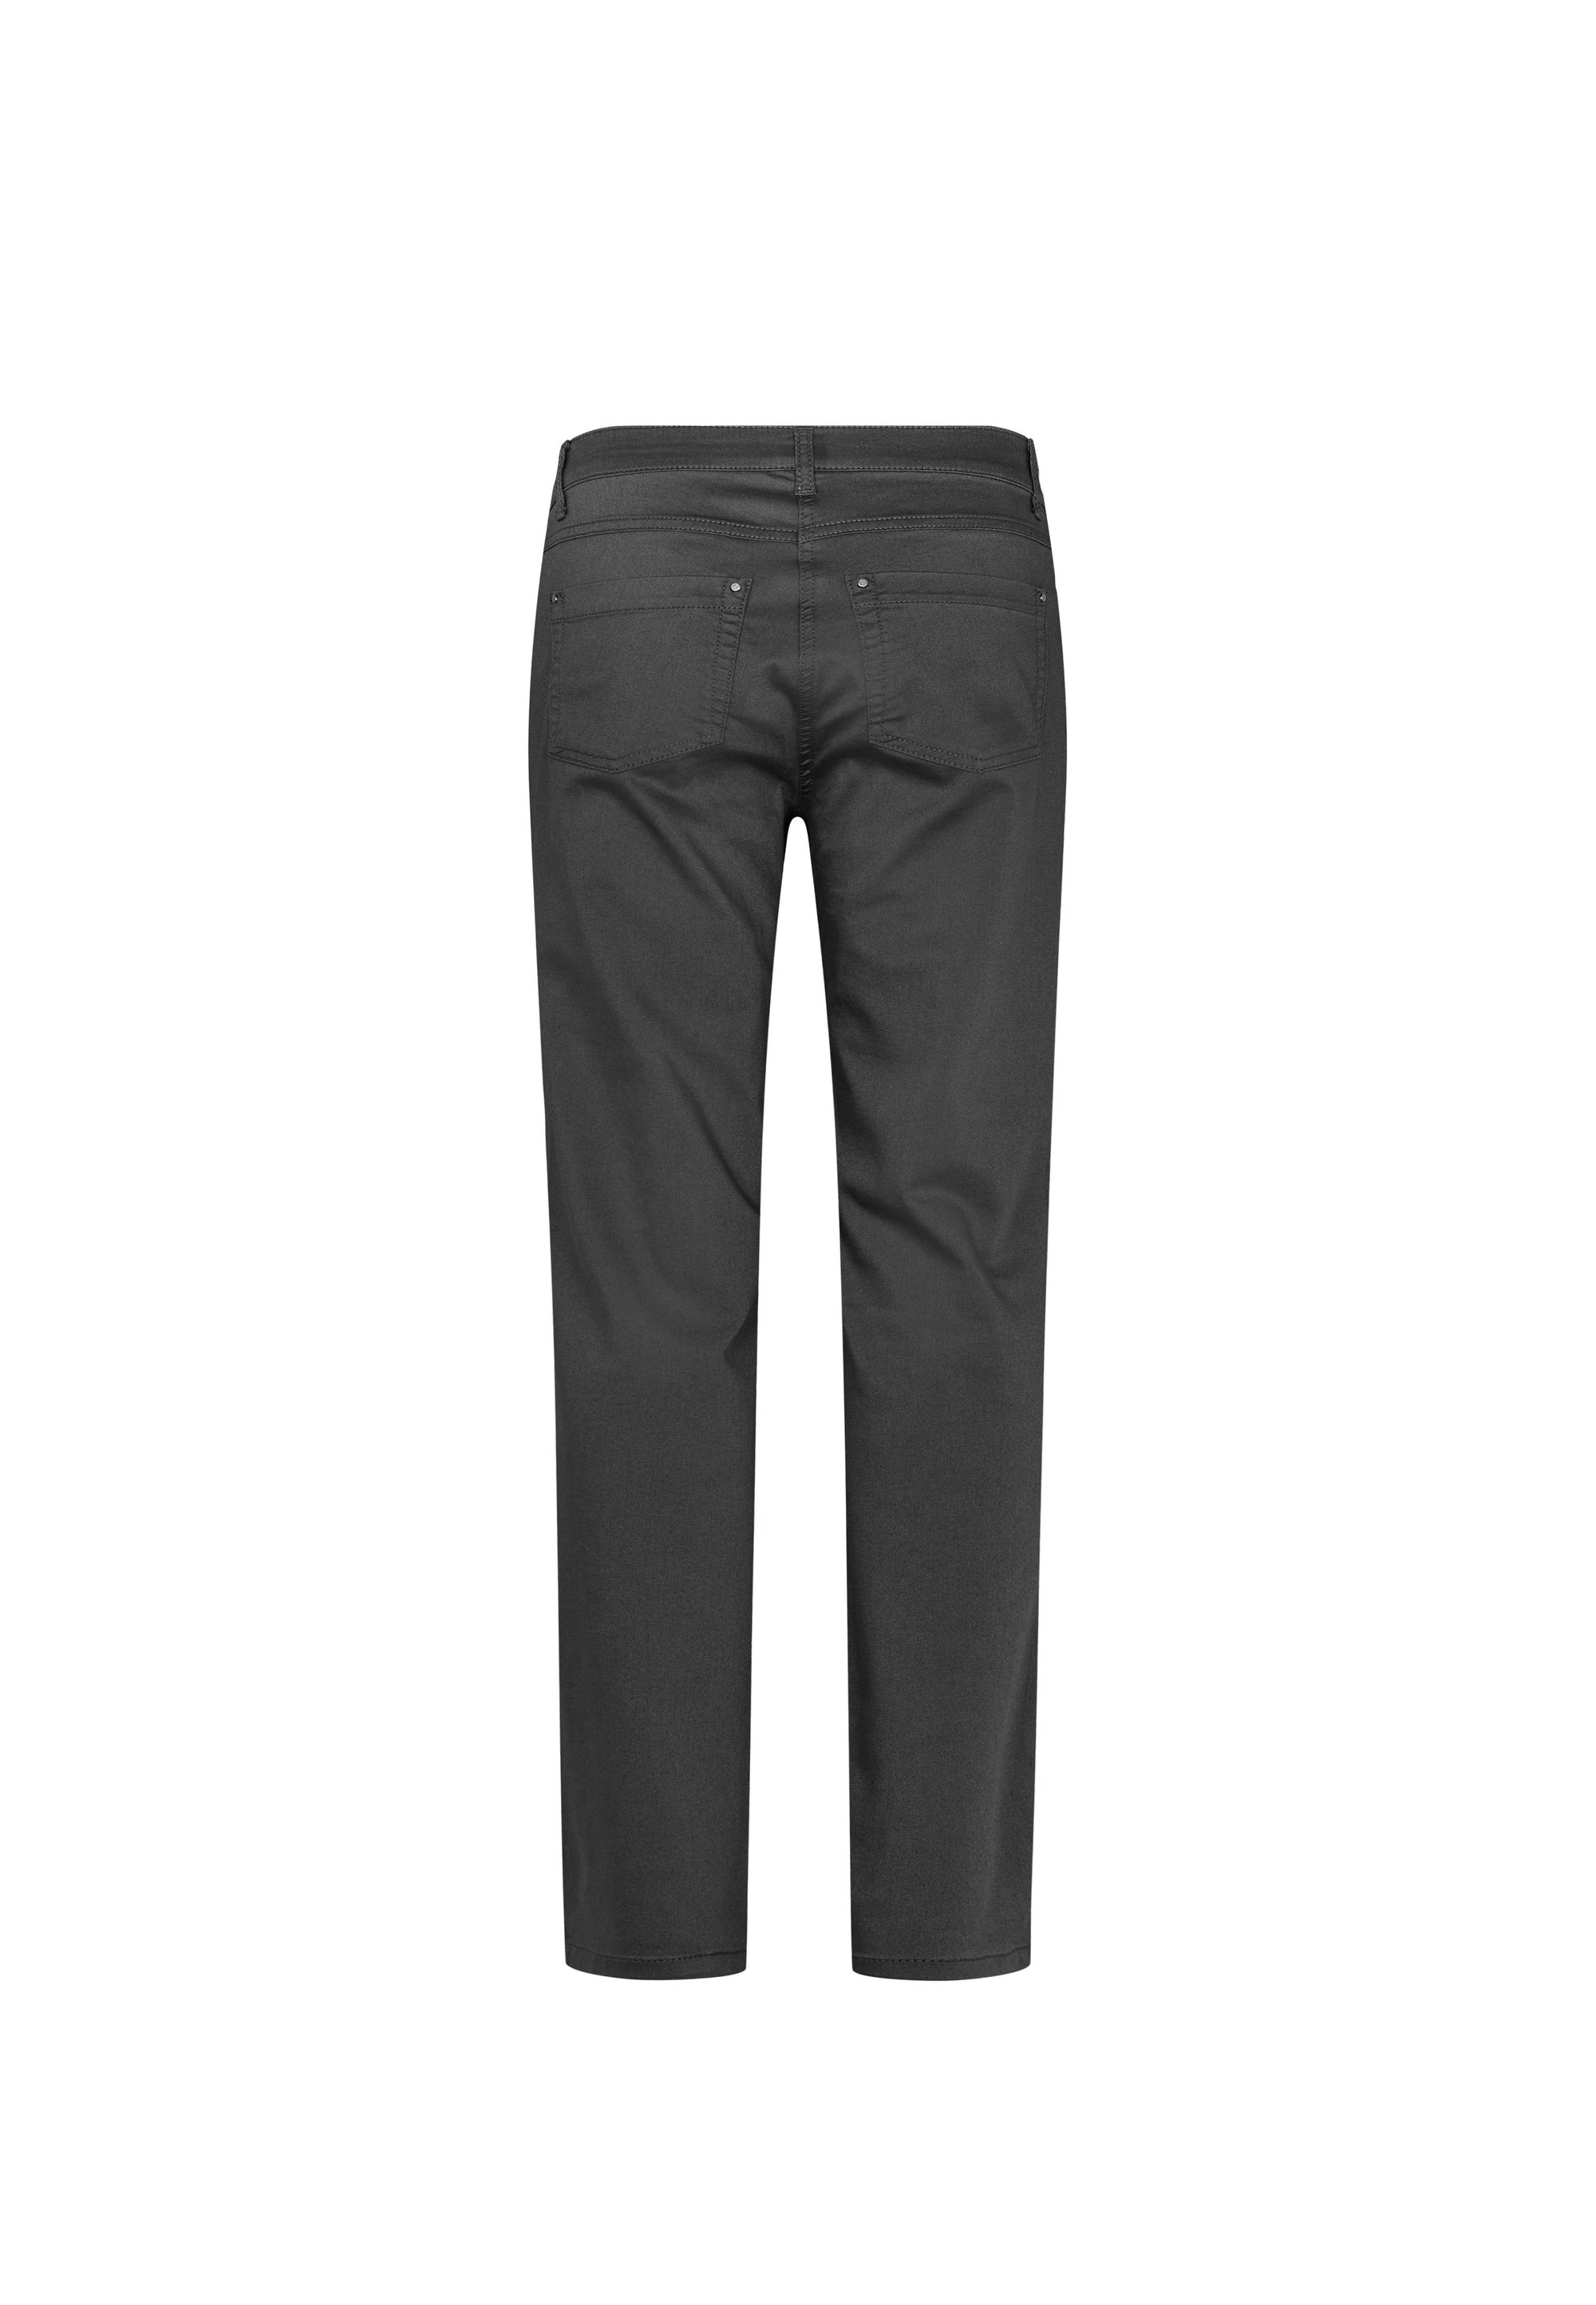 LAURIE  Charlotte Regular - Long Length Trousers REGULAR 99000 Black